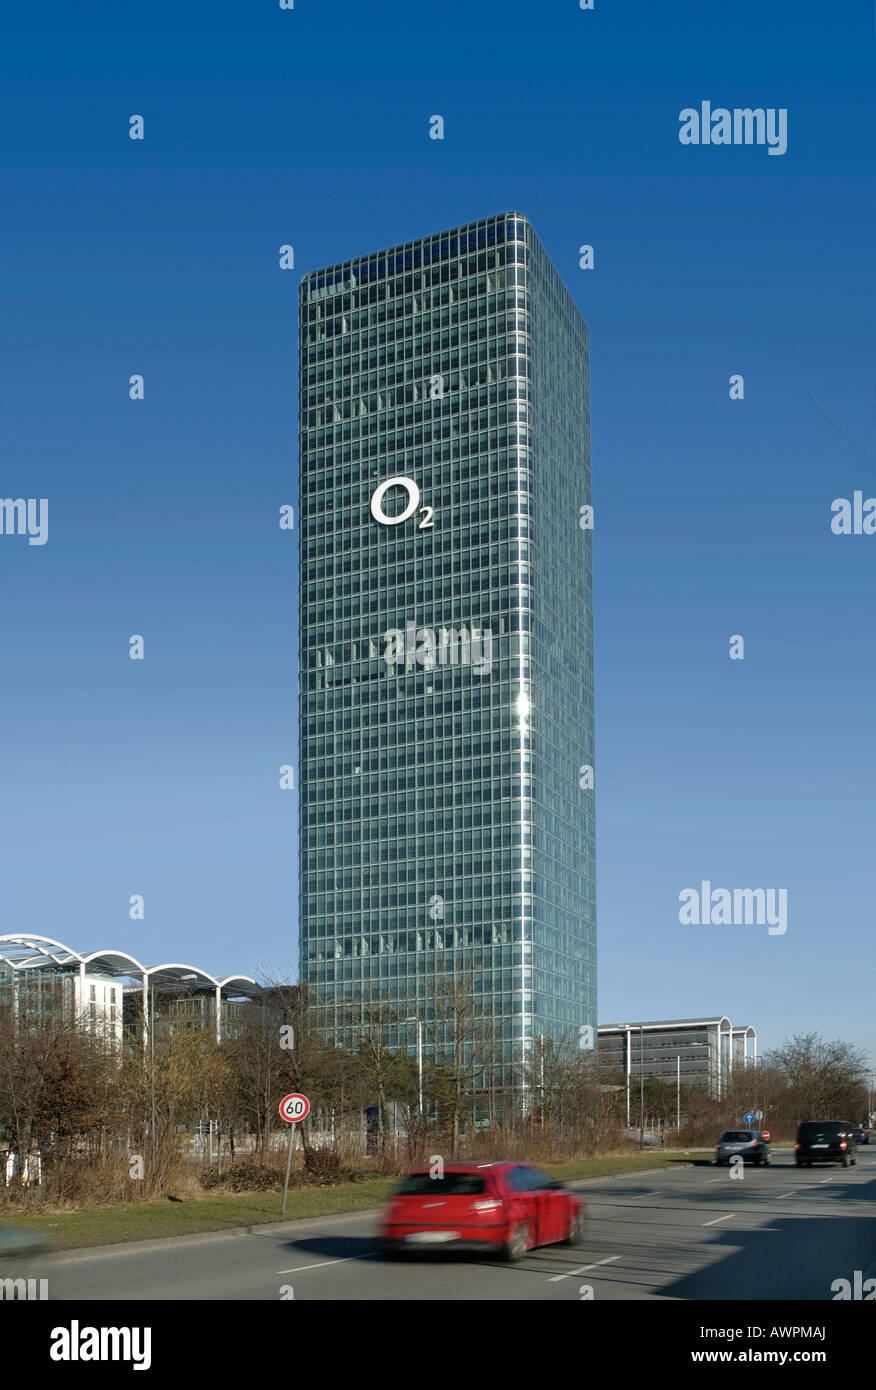 O2 (società di telecomunicazioni) Il logo su un grattacielo a Monaco di Baviera, Germania, Europa Foto Stock